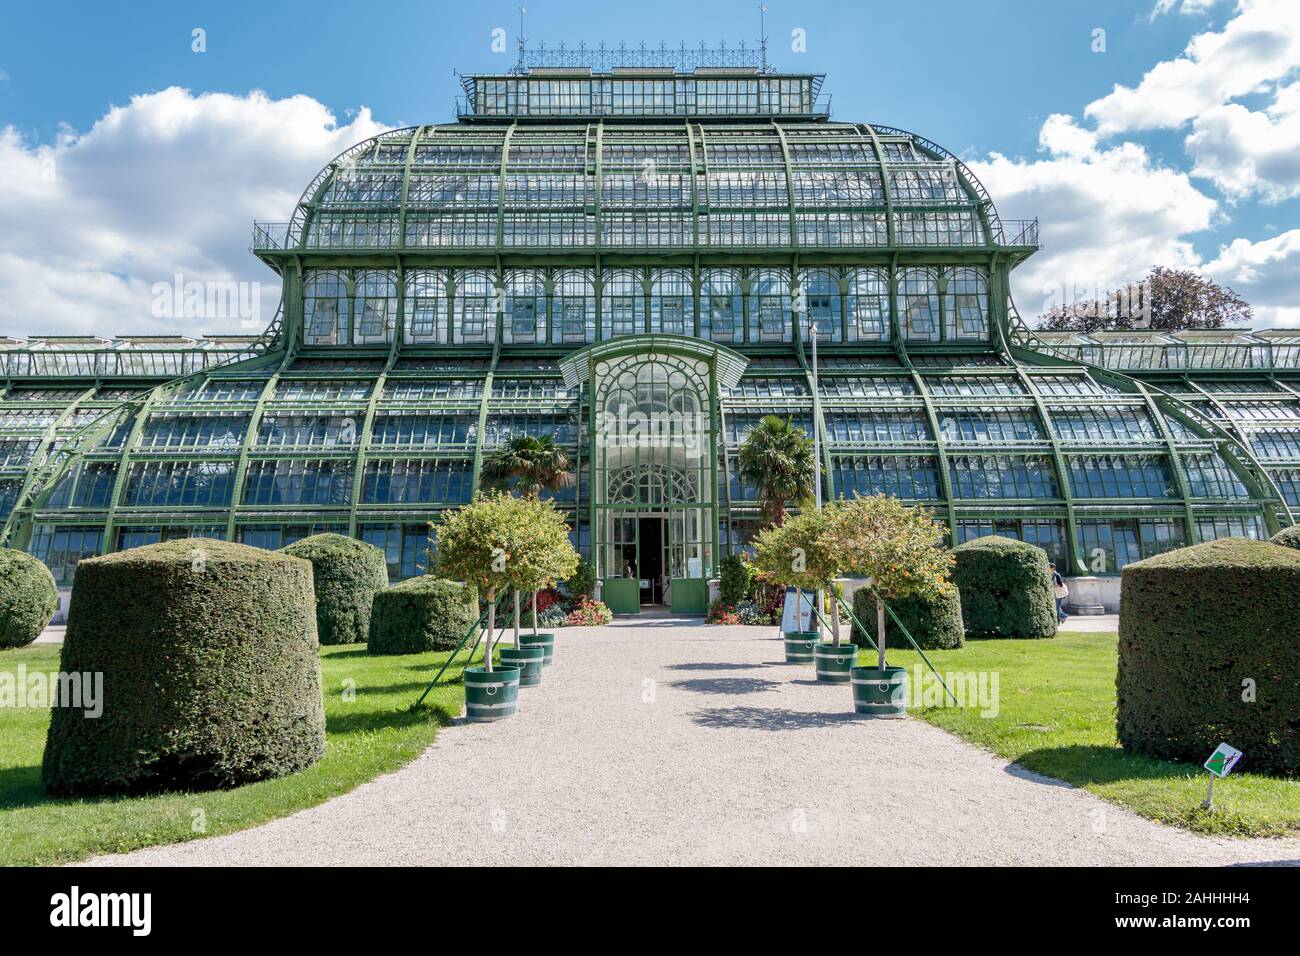 Austria, Vienna - September 3, 2019: Botanical Garden Palmenhaus Schonbrunn is a large greenhouse located in schonbrunn palace garden in vienna, austr Stock Photo